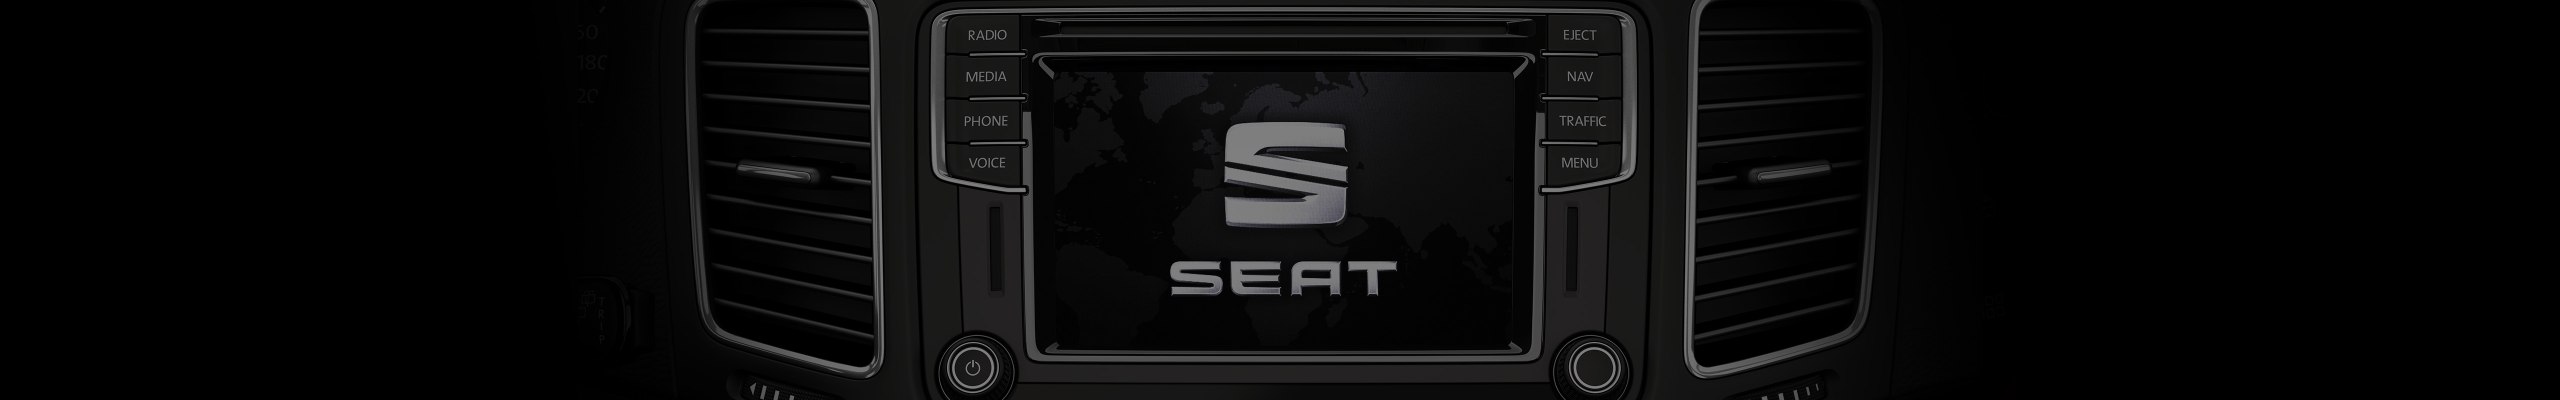 Zbliżenie na ekran multimedialny w SEAT-cie - mapy gps